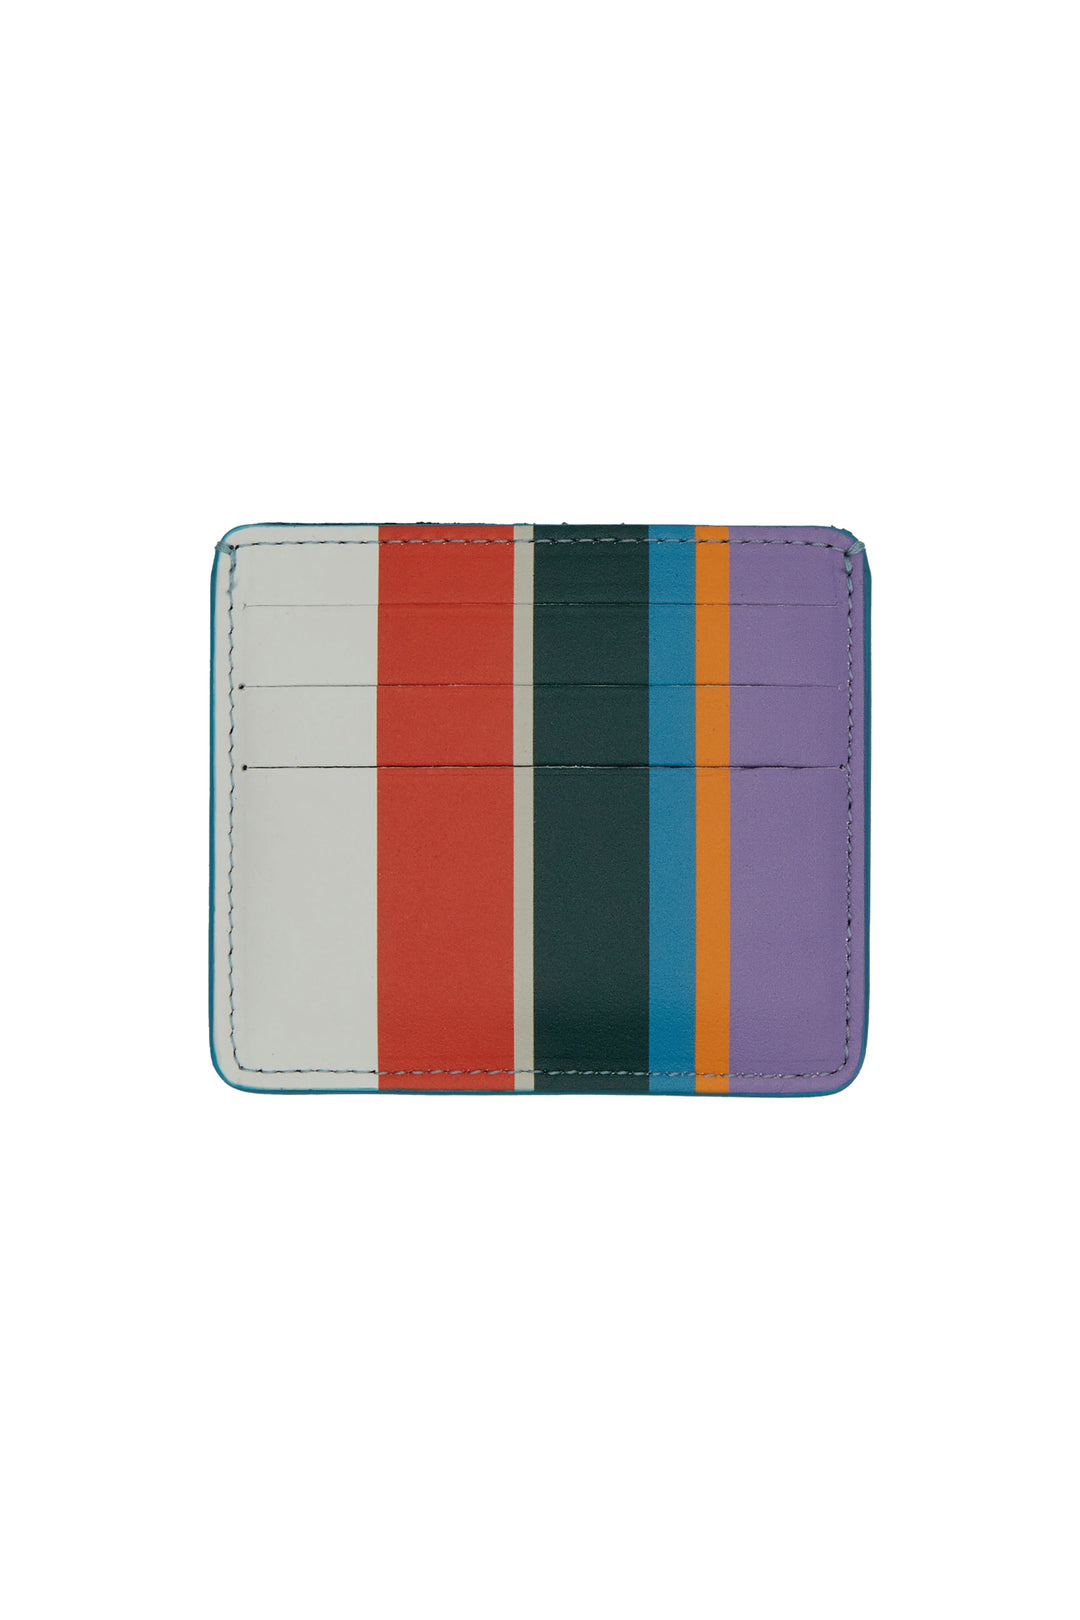 GALLO Porta carta di credito pelle righe multicolor bianco - Mancinelli 1954